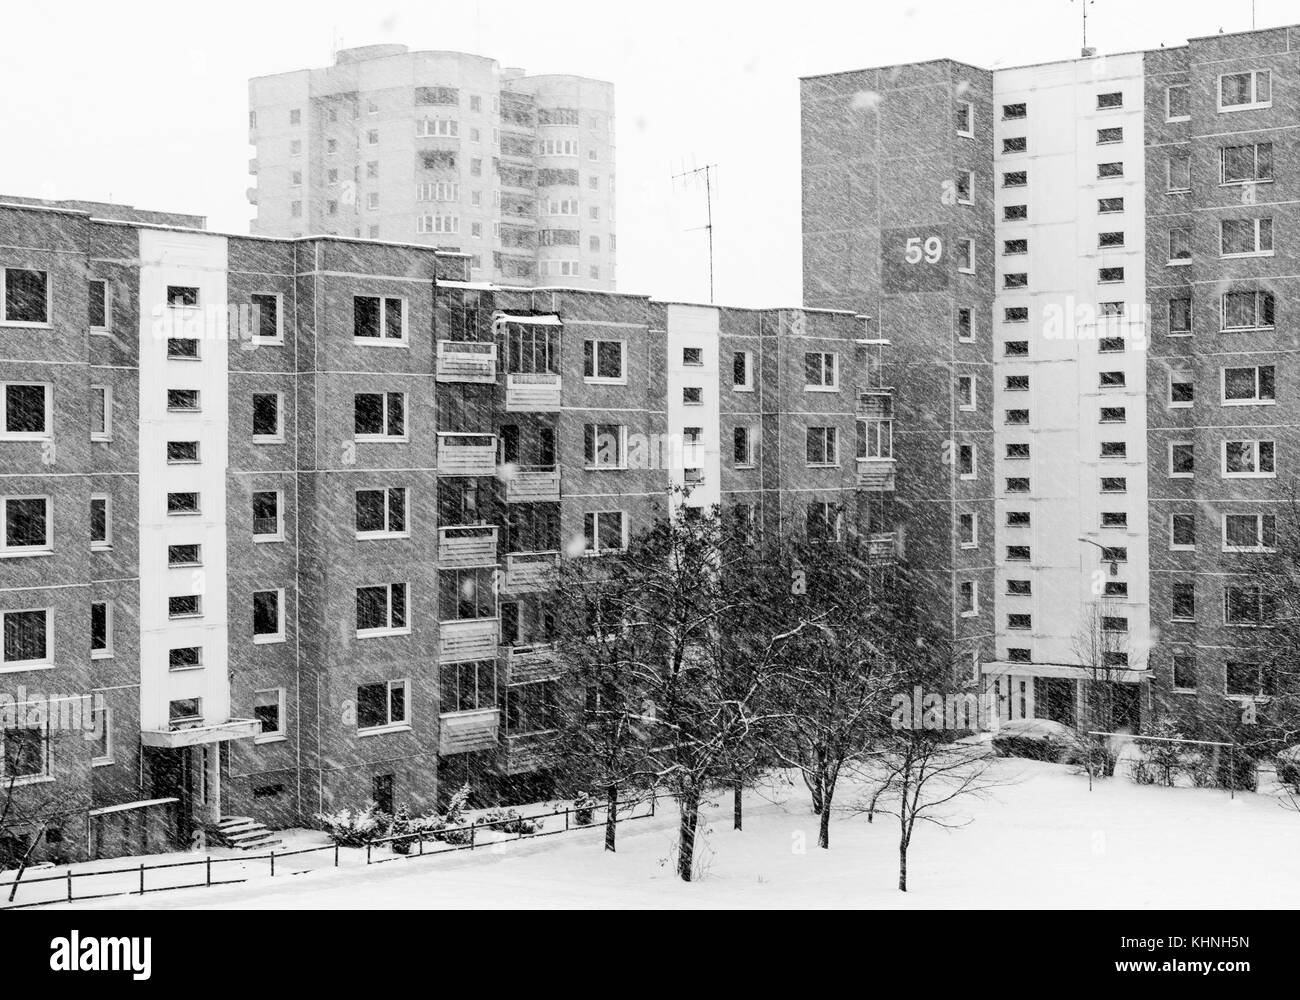 Ein schwarz-weiß Foto von einigen mehrstöckigen Block flache Gebäude in Vilnius an einem verschneiten Tag. sowjetischen Epoche Architektur. Stockfoto